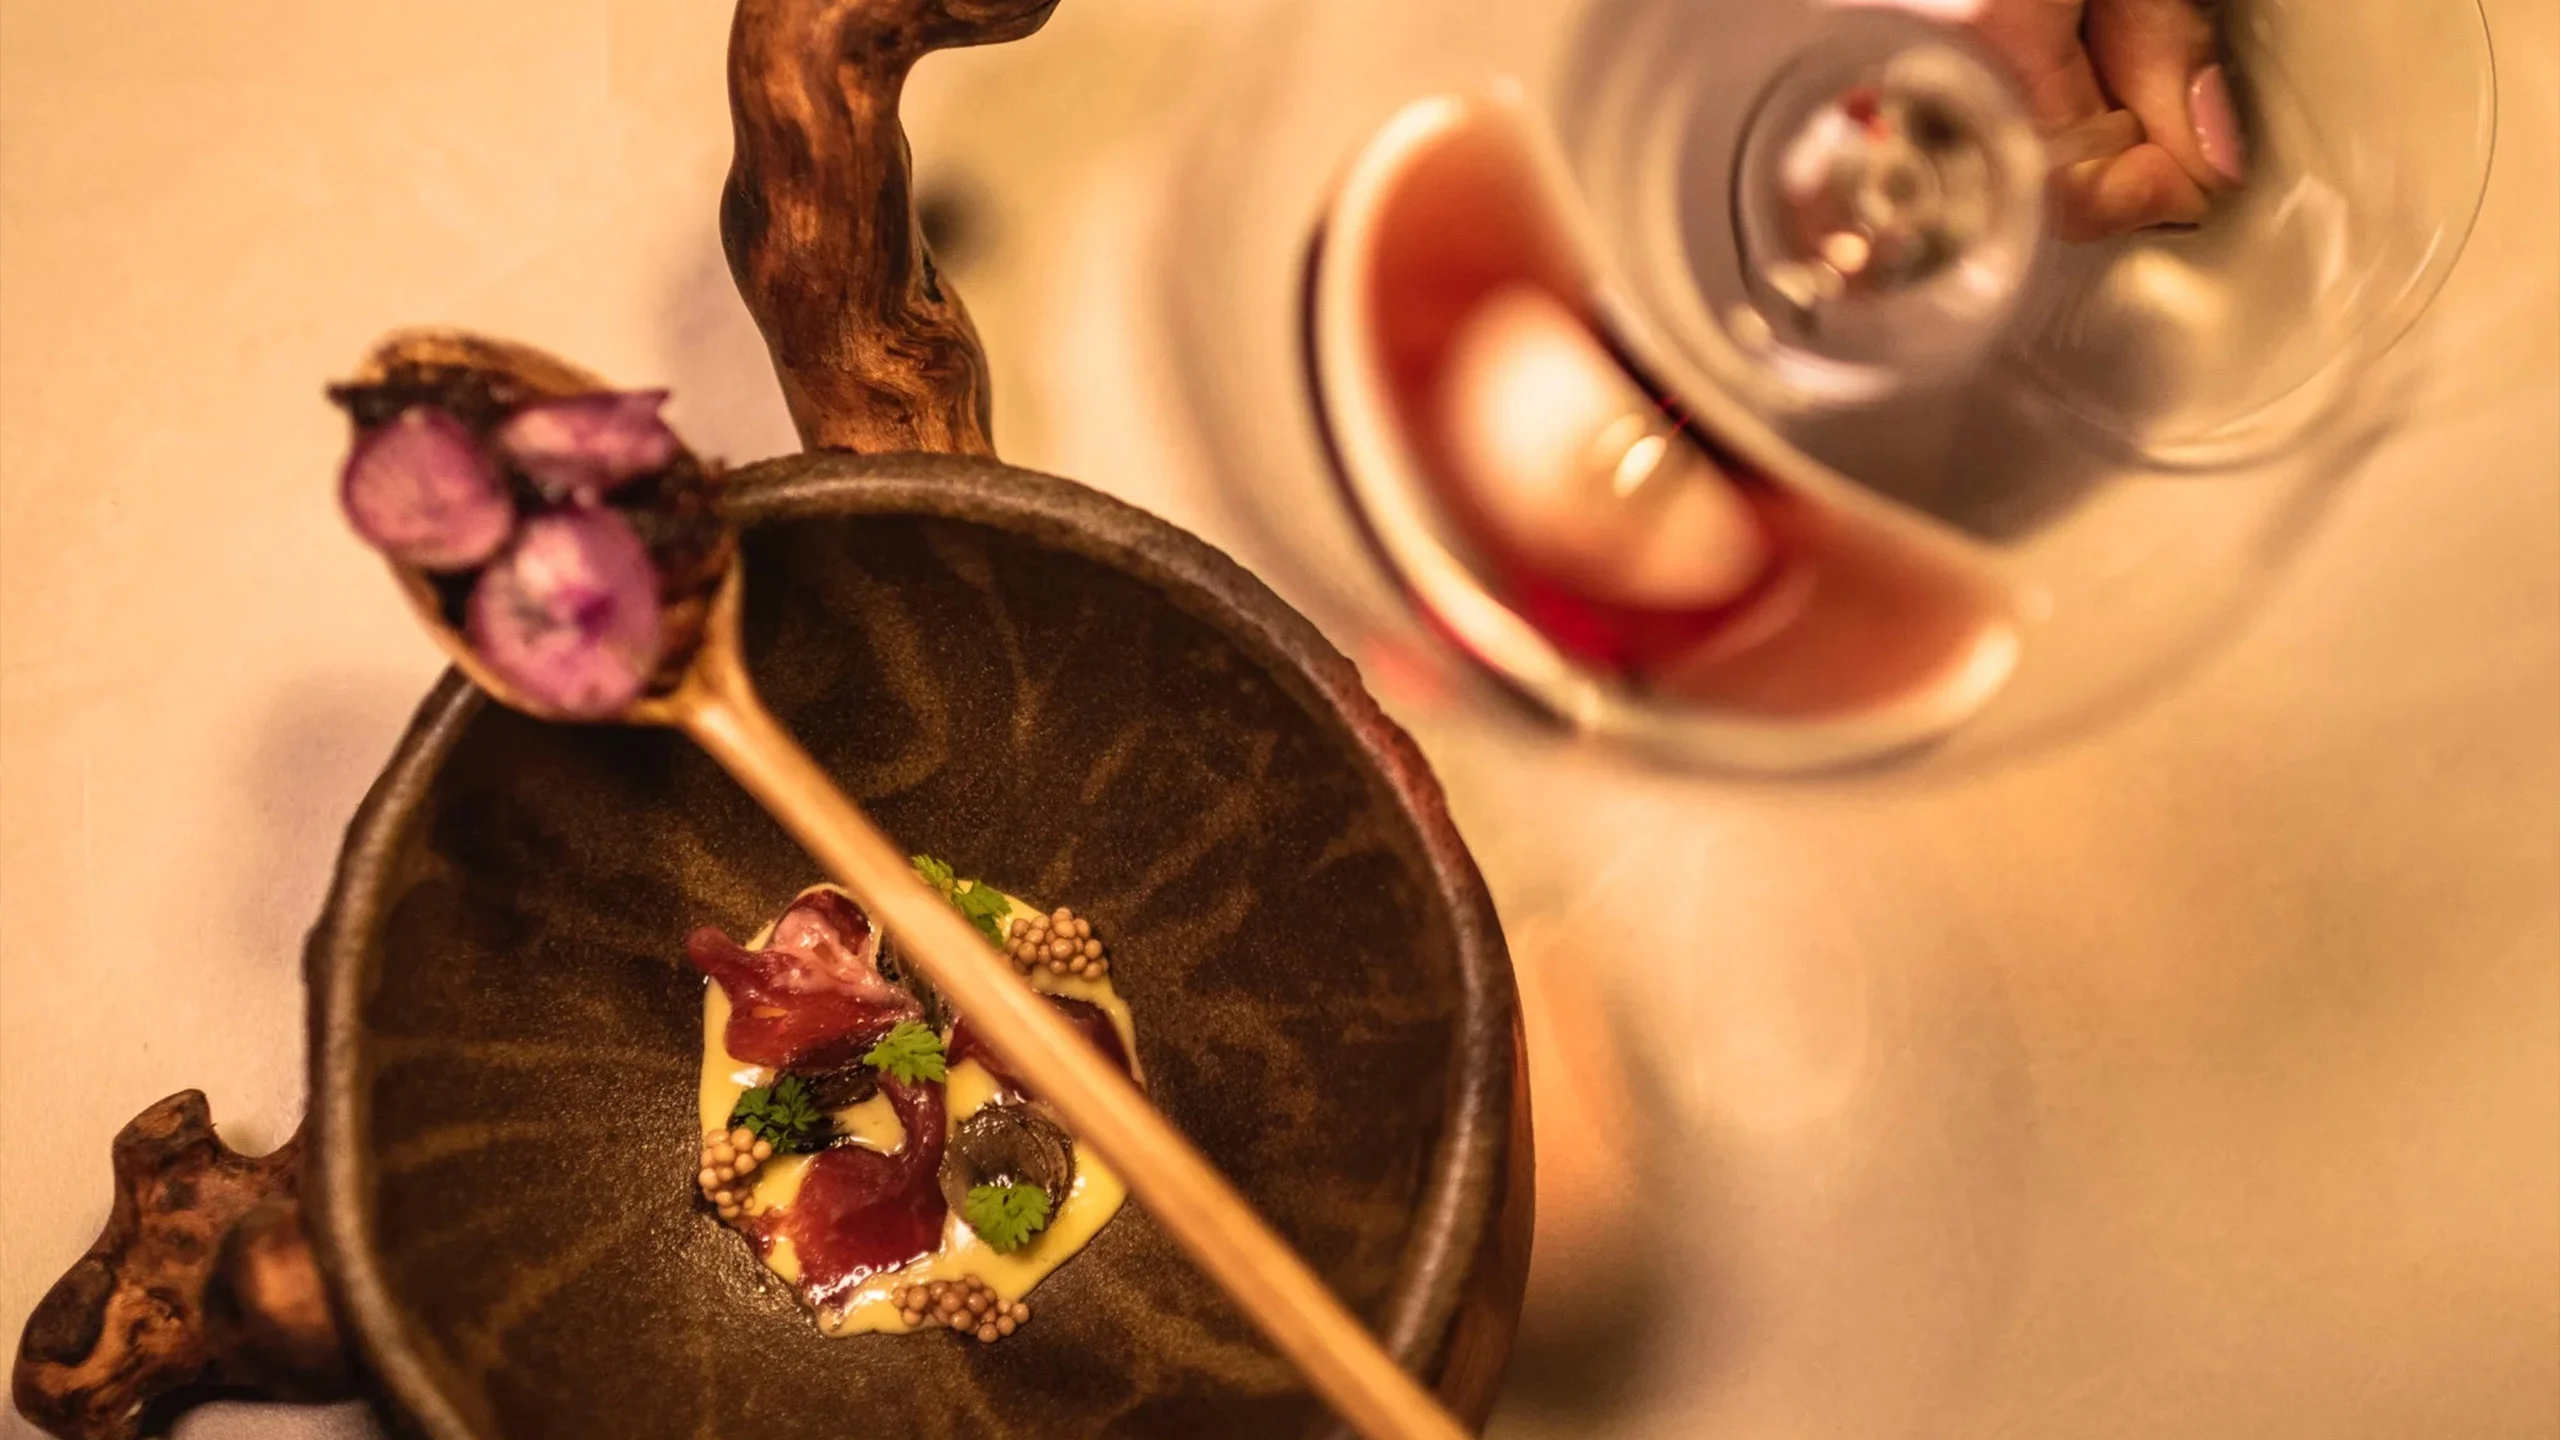 El restaurante de Ávila con platos tradicionales que fue galardonado por la Guía Michelin por su conciencia ecológica